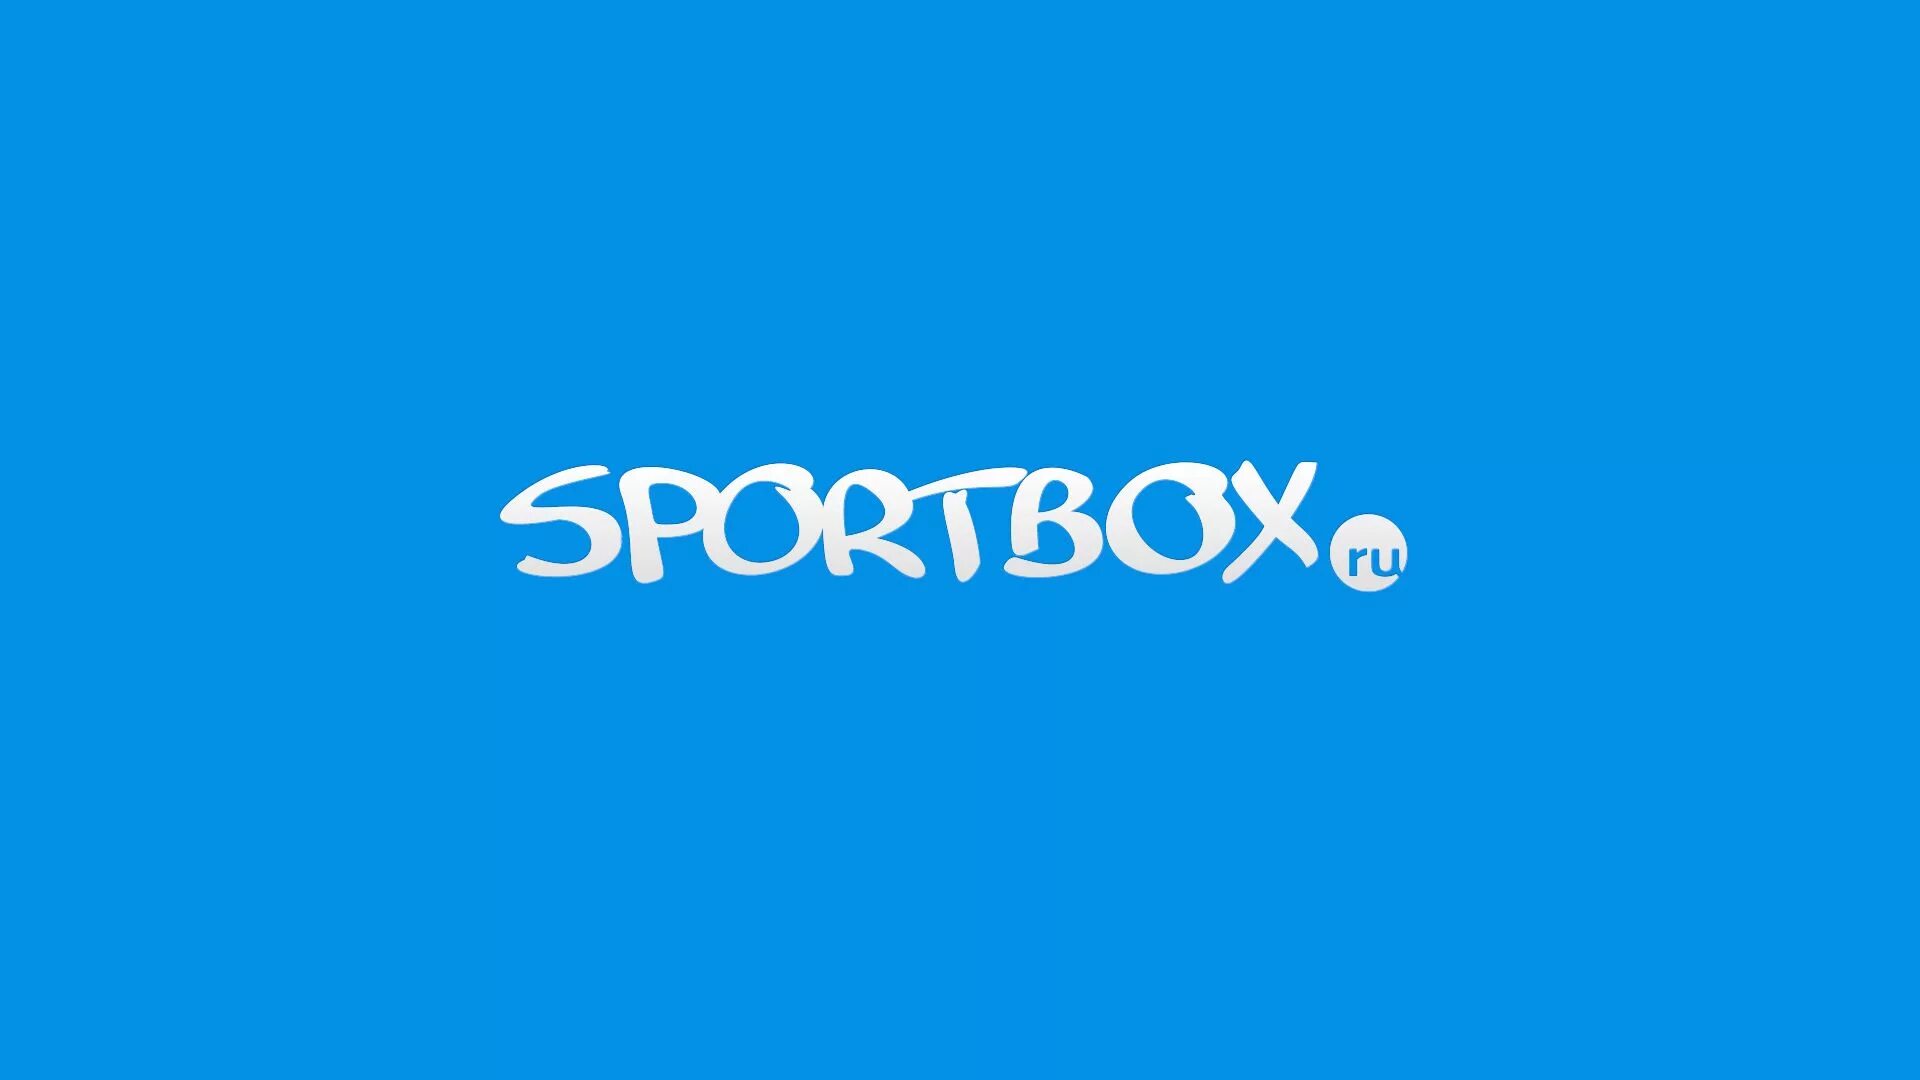 Sportbox ry. Спортбокс. Спортбокс лого. Спортмикс. Sportbox.ru.